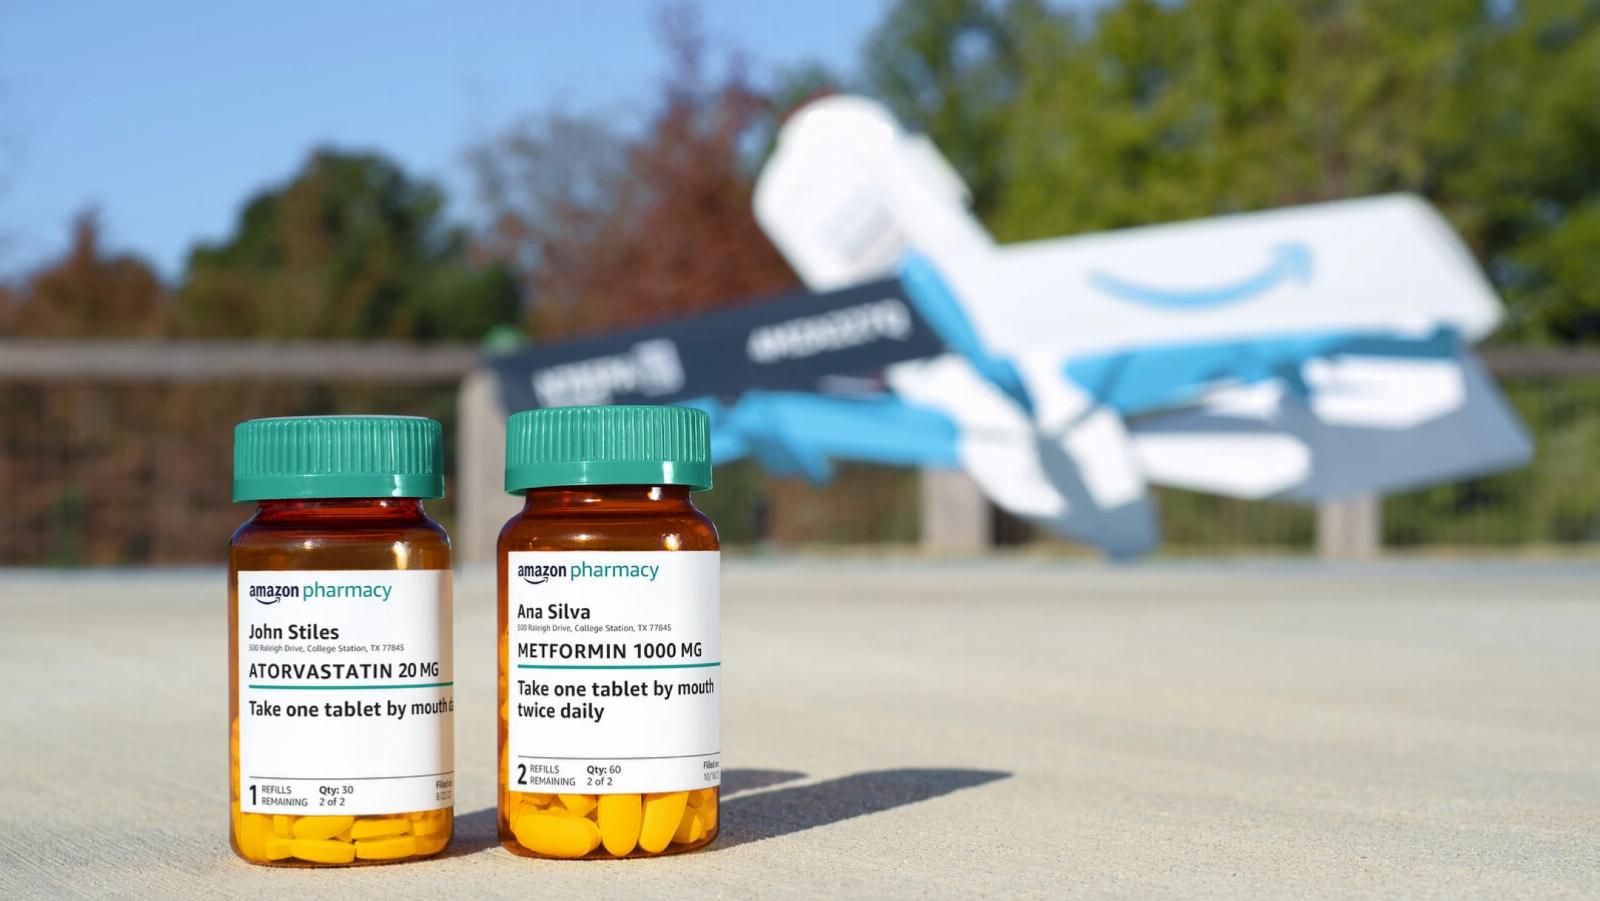 Amazon’s drones begin delivering prescription medications in Texas